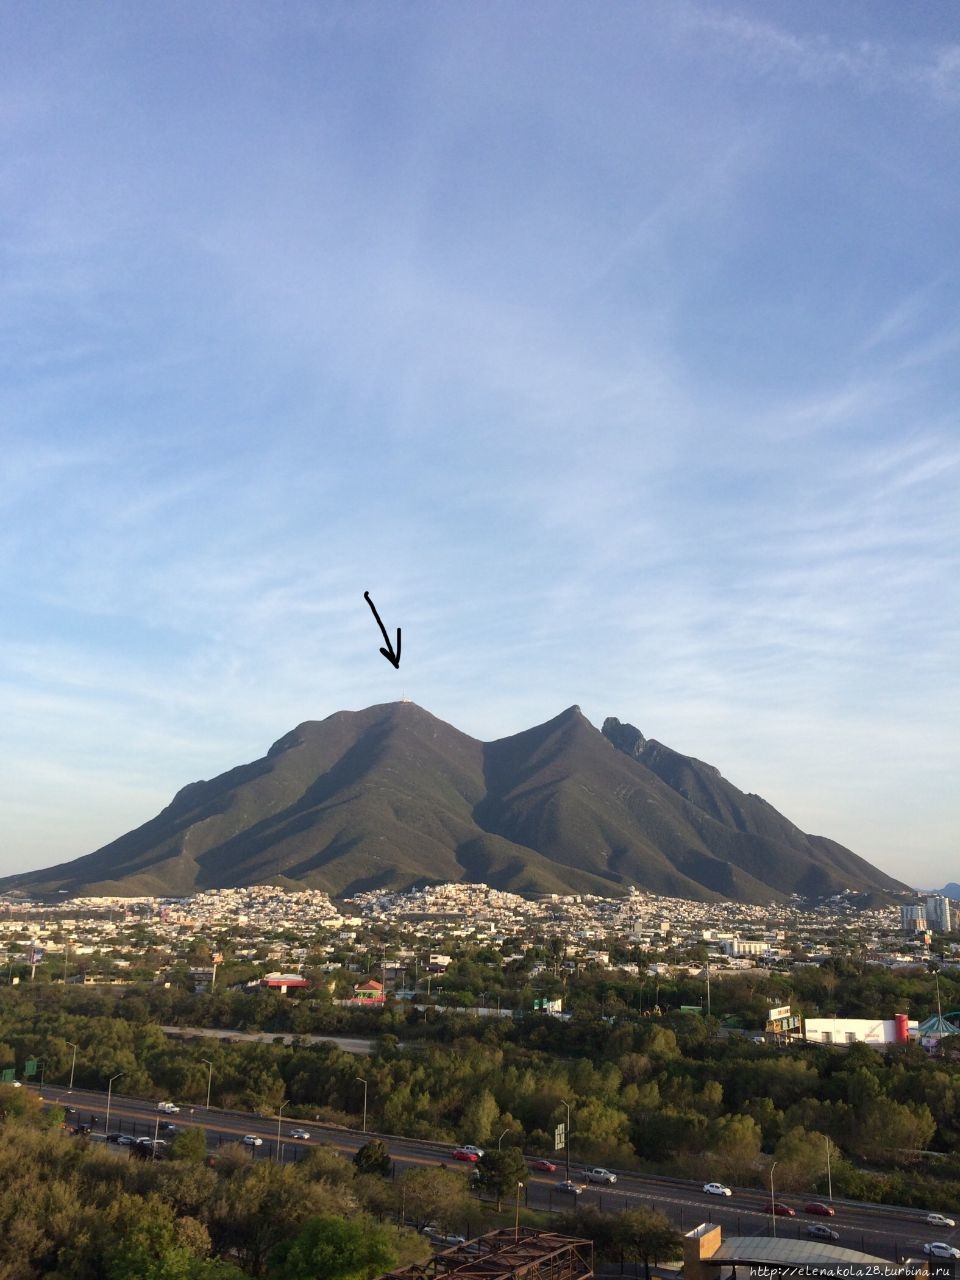 Гора Сера де ла Сиййла, забрались на нее на следующий день.) Монтеррей, Мексика